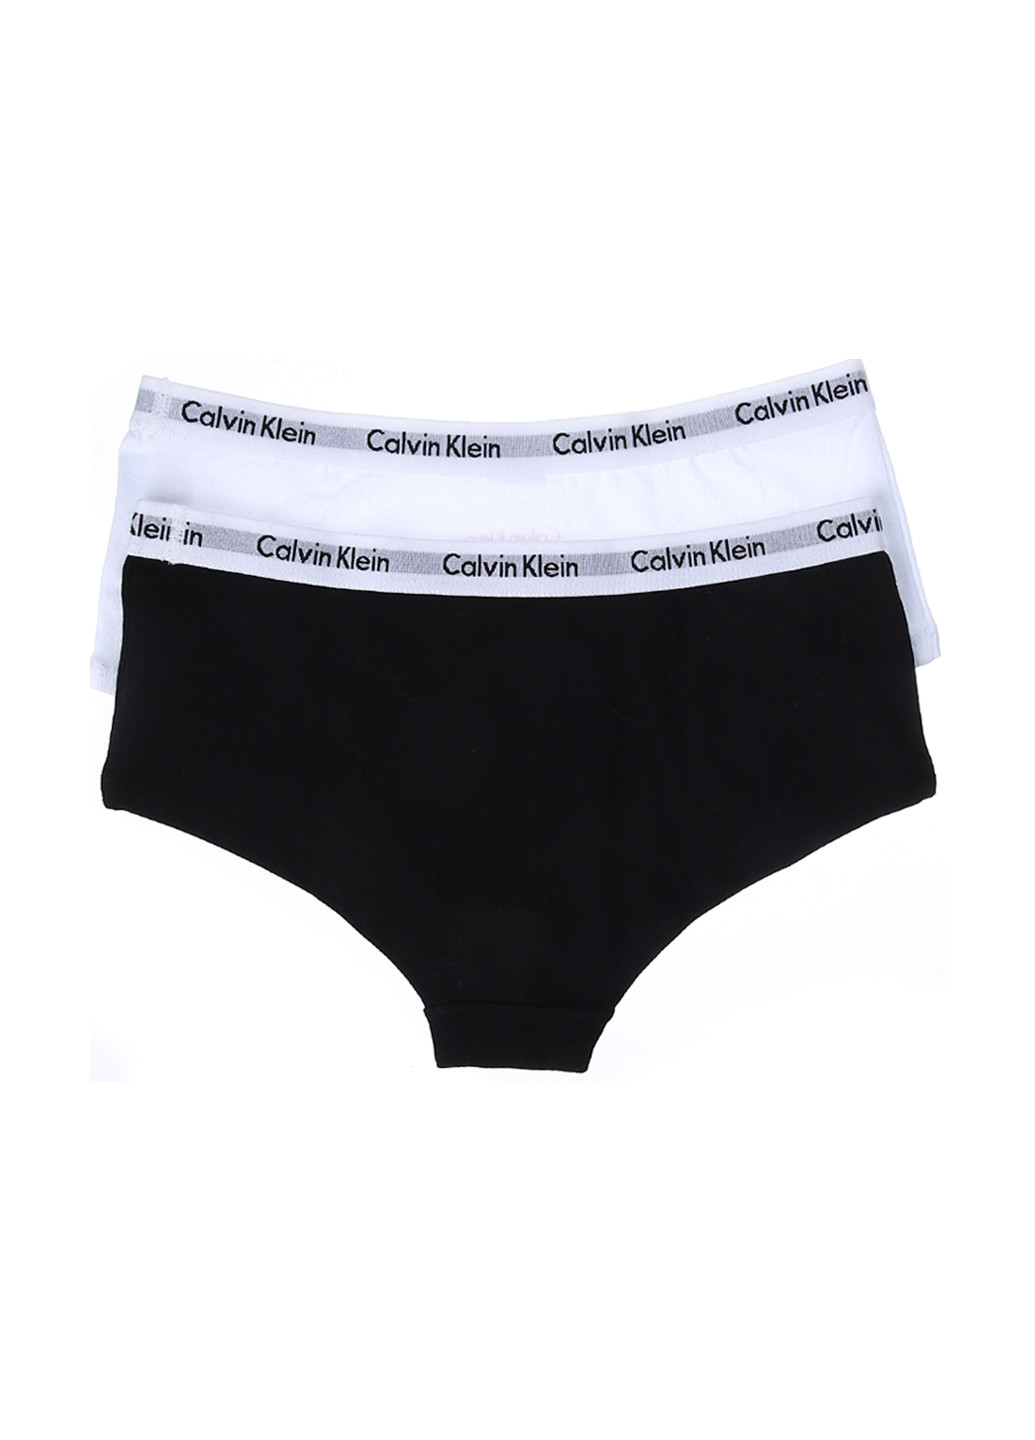 Трусы (2 шт.) Calvin Klein трусики-шорты надписи чёрно-белых повседневные трикотаж